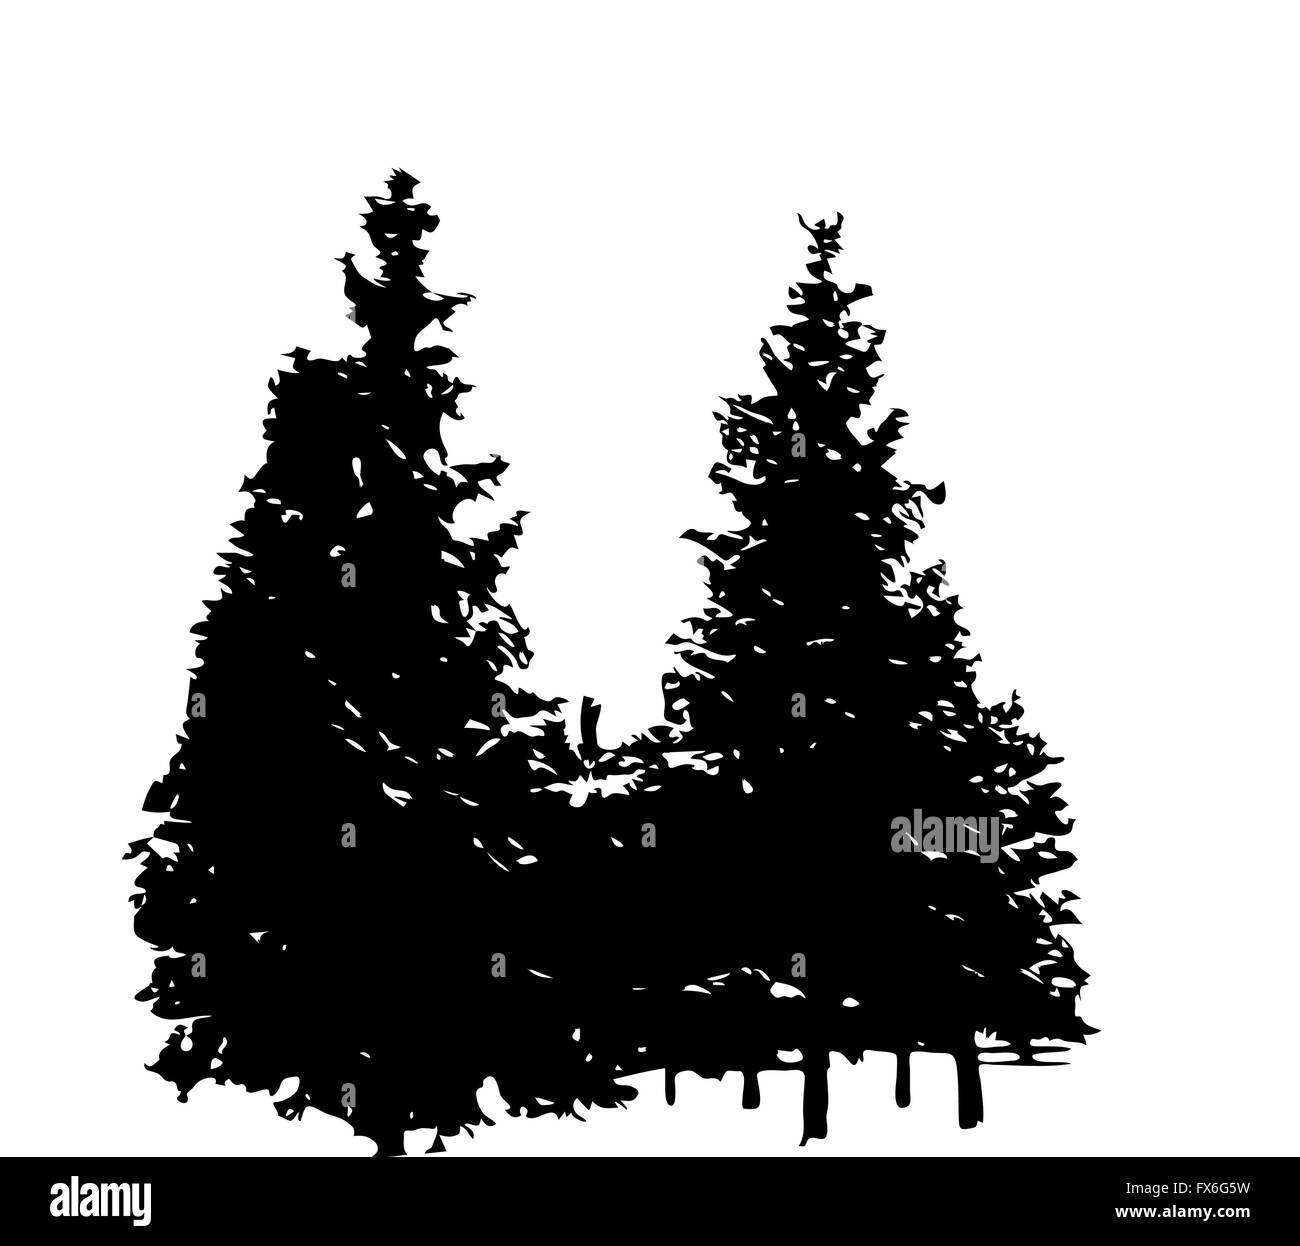 Baum-Silhouette isoliert auf weißem Migrationshintergrund. Vecrtor schlecht Stock Vektor